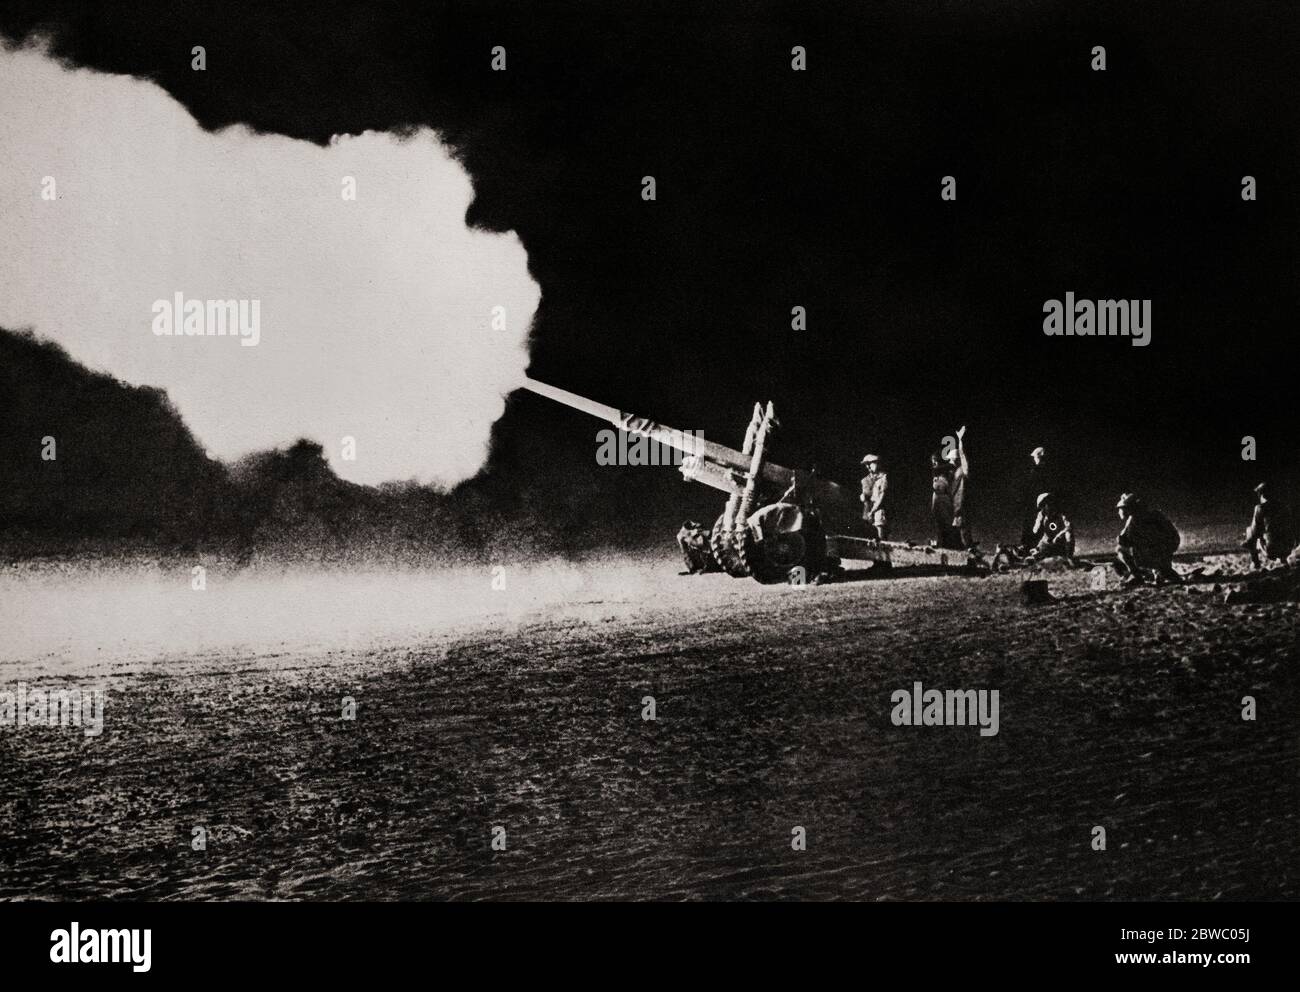 El cañón de campo de 4.5 pulgadas bombardeando tanques enemigos (alemanes) durante la Segunda Batalla de el Alamein (23 de octubre – 11 de noviembre de 1942) que impidió que el eje avanzara más hacia Egipto. Era una buena arma que podía disparar una concha de 25 kg hasta 11.6 millas que emparejaba aulitzers alemanes de 10.5 cm y 150 mm en alcance y potencia de fuego. Foto de stock